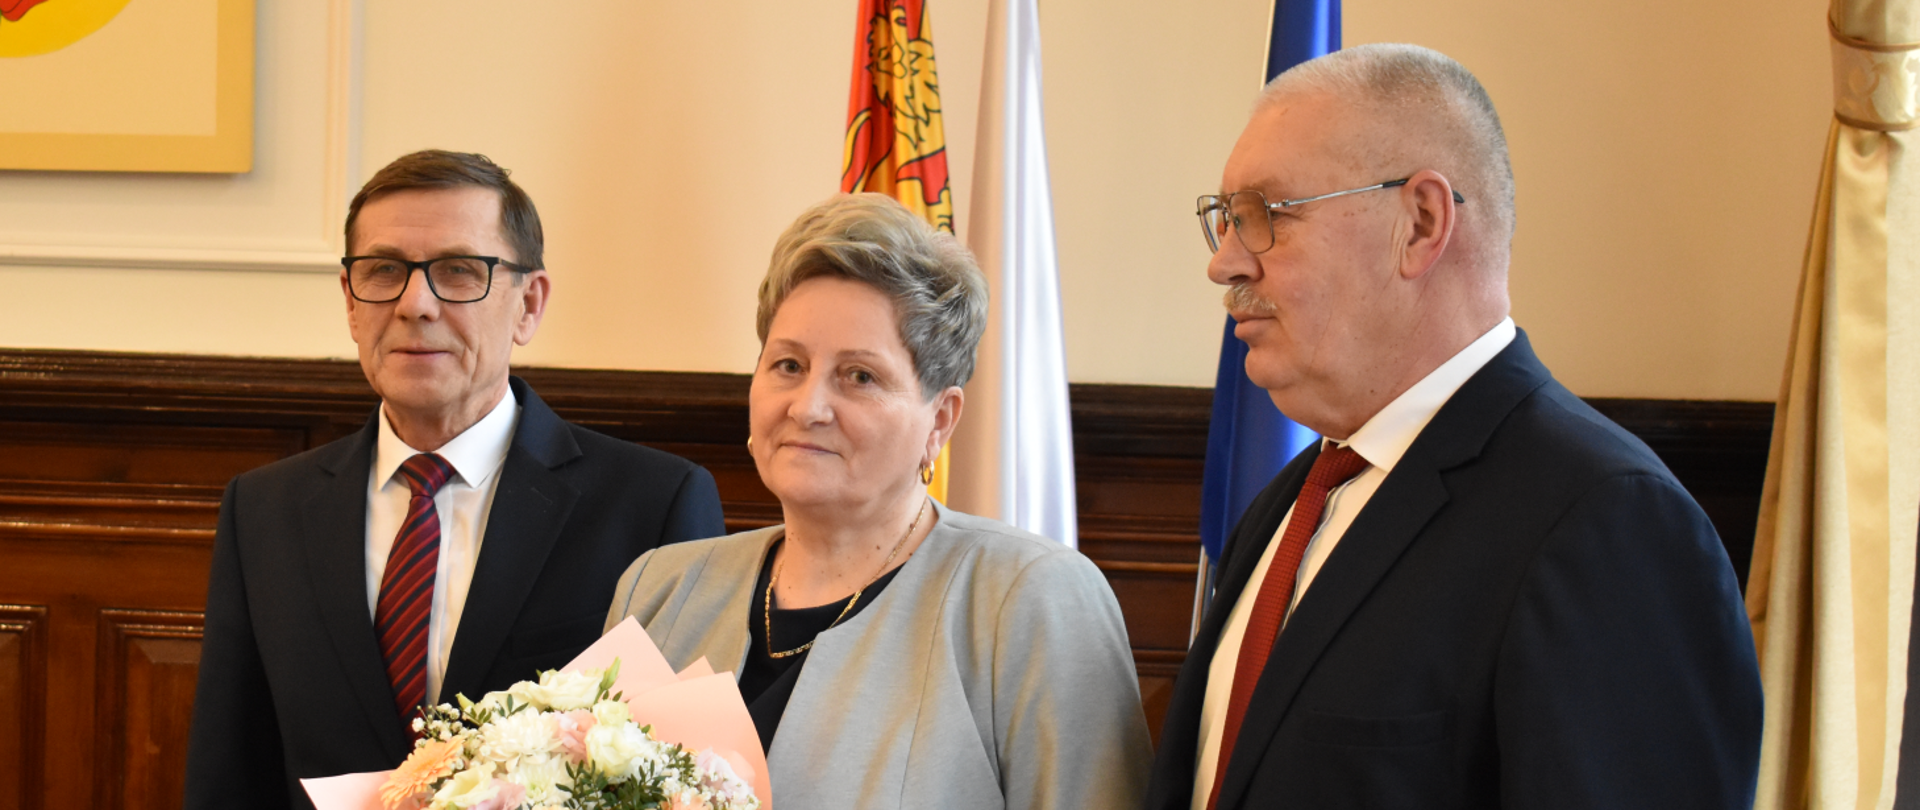 Andrzej Ochlak, Halina Kleinowska i Kazimierz Wiśniewski podczas 67. Sesji Rady Powiatu w Nowym Mieście Lubawskim